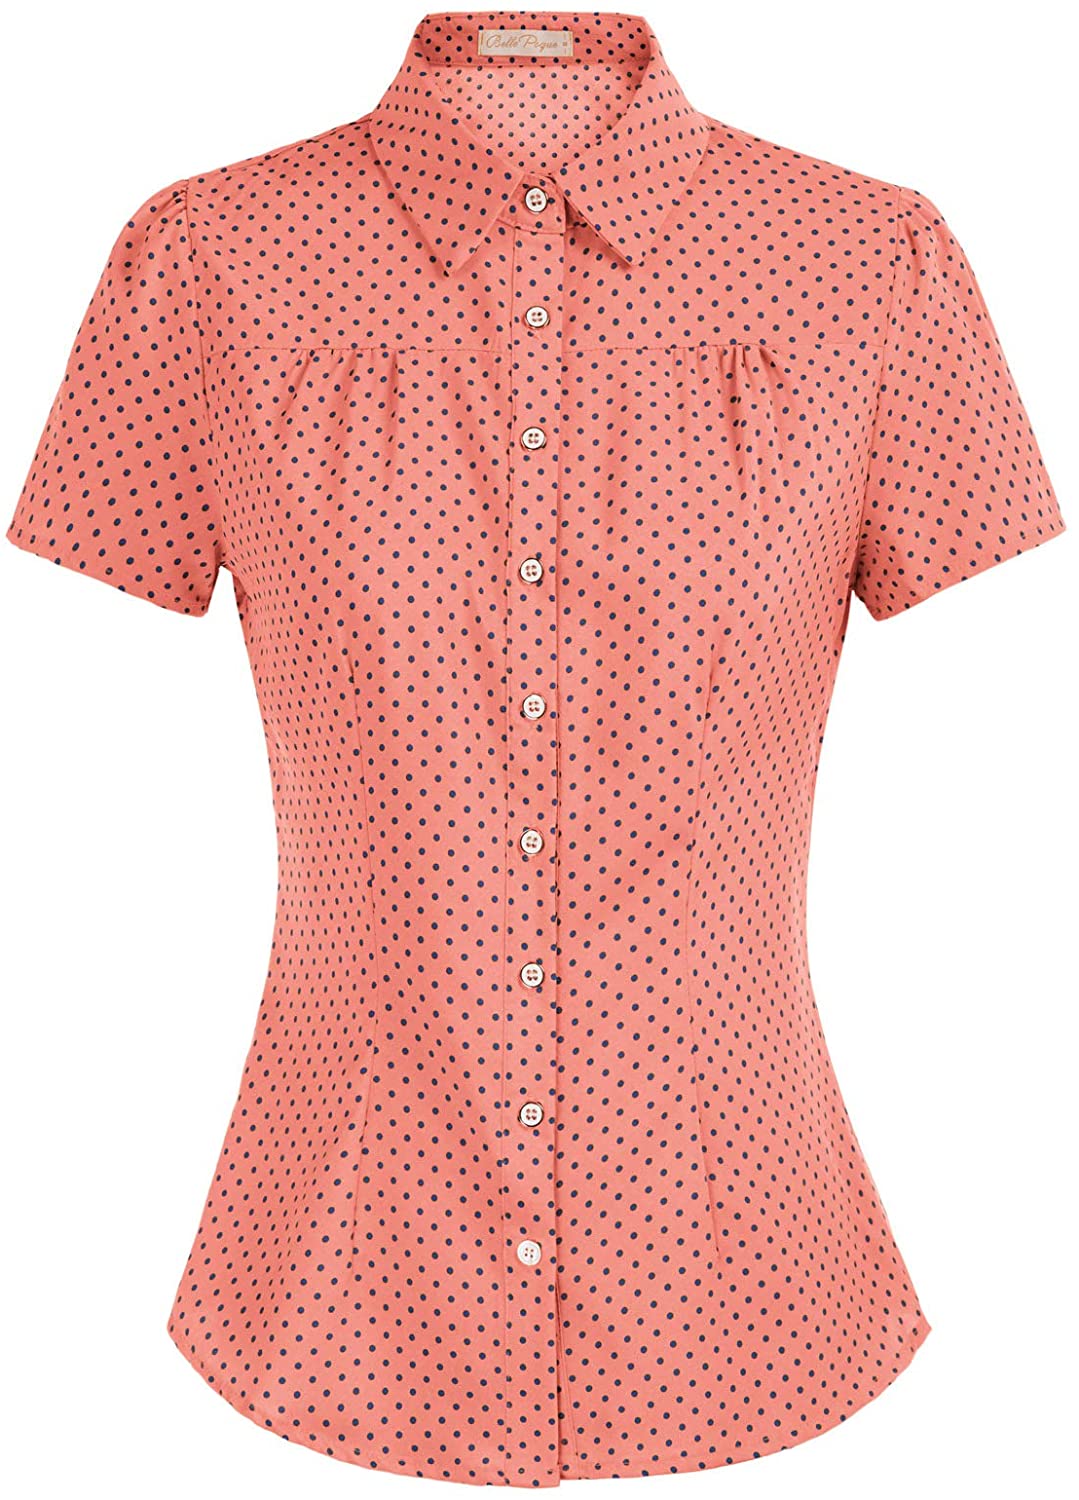 | WITTE HERT Kleding Dameskleding Tops & T-shirts Blouses | Retro Vinage MOD Vintage Womens 70 's rode polka dot korte mouw shirt 